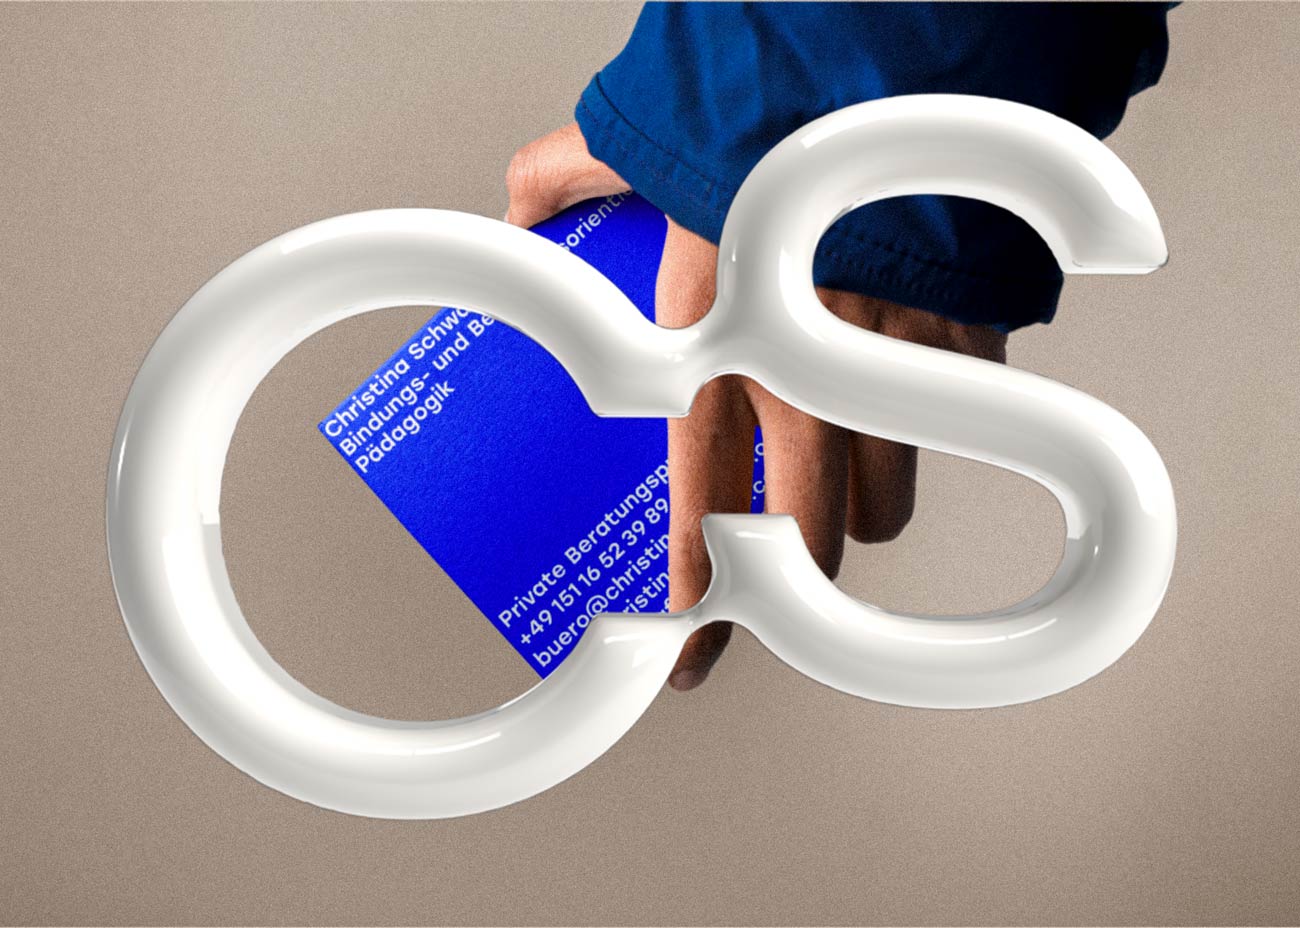 Die Initialien von Christina Schwarz (CS) dreidimensional in weiß vor einem Bild das den Arm einer Person zeigt die einen blauen Flyer mit den Kontaktdaten der Praxis in der Hand hält.